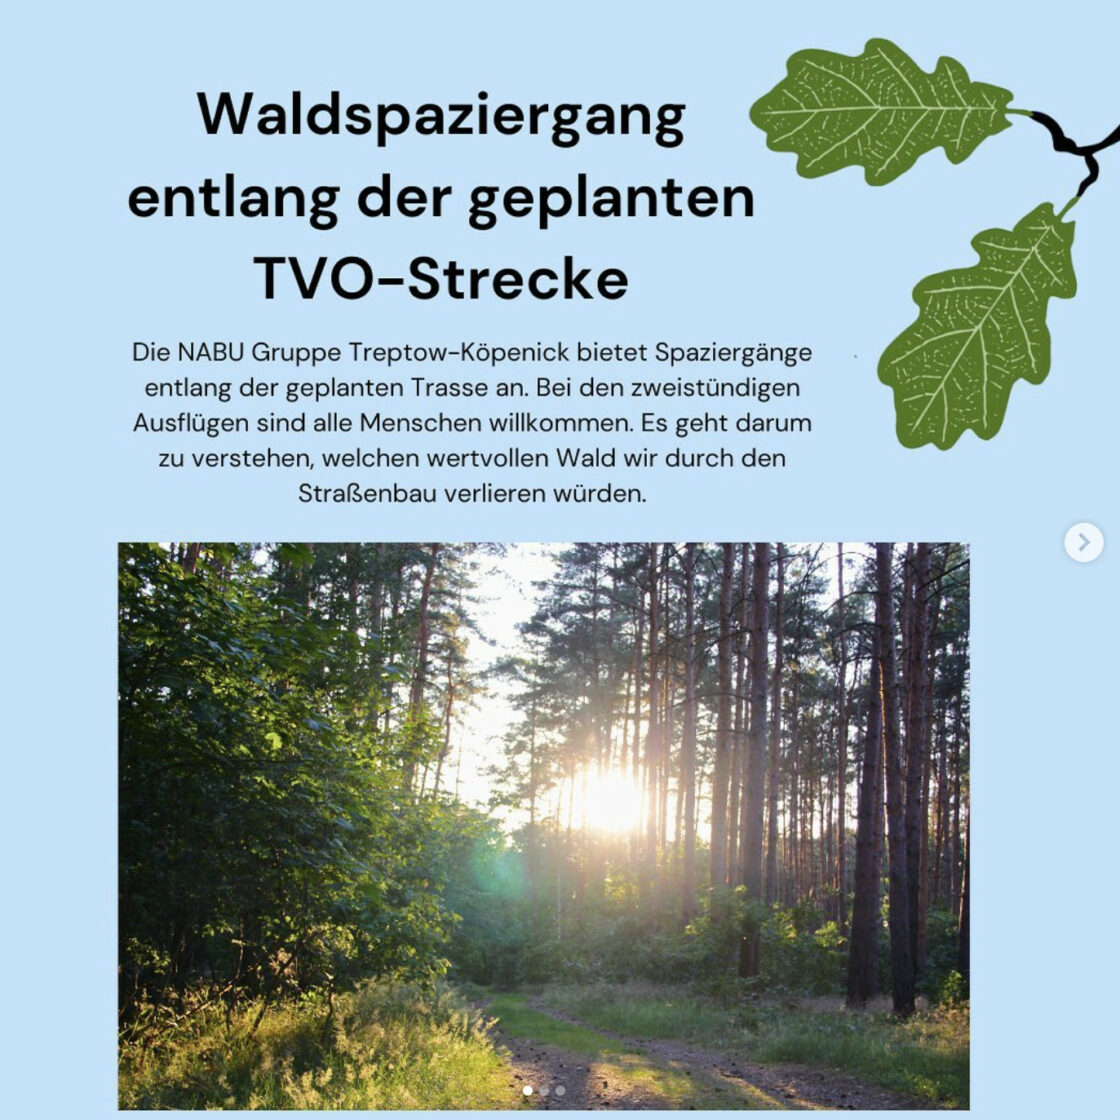 Waldspaziergang entlang der geplanten TVO-Strecke. Illustration von Eichenblätter und Foto vom Wald mit der Sonne